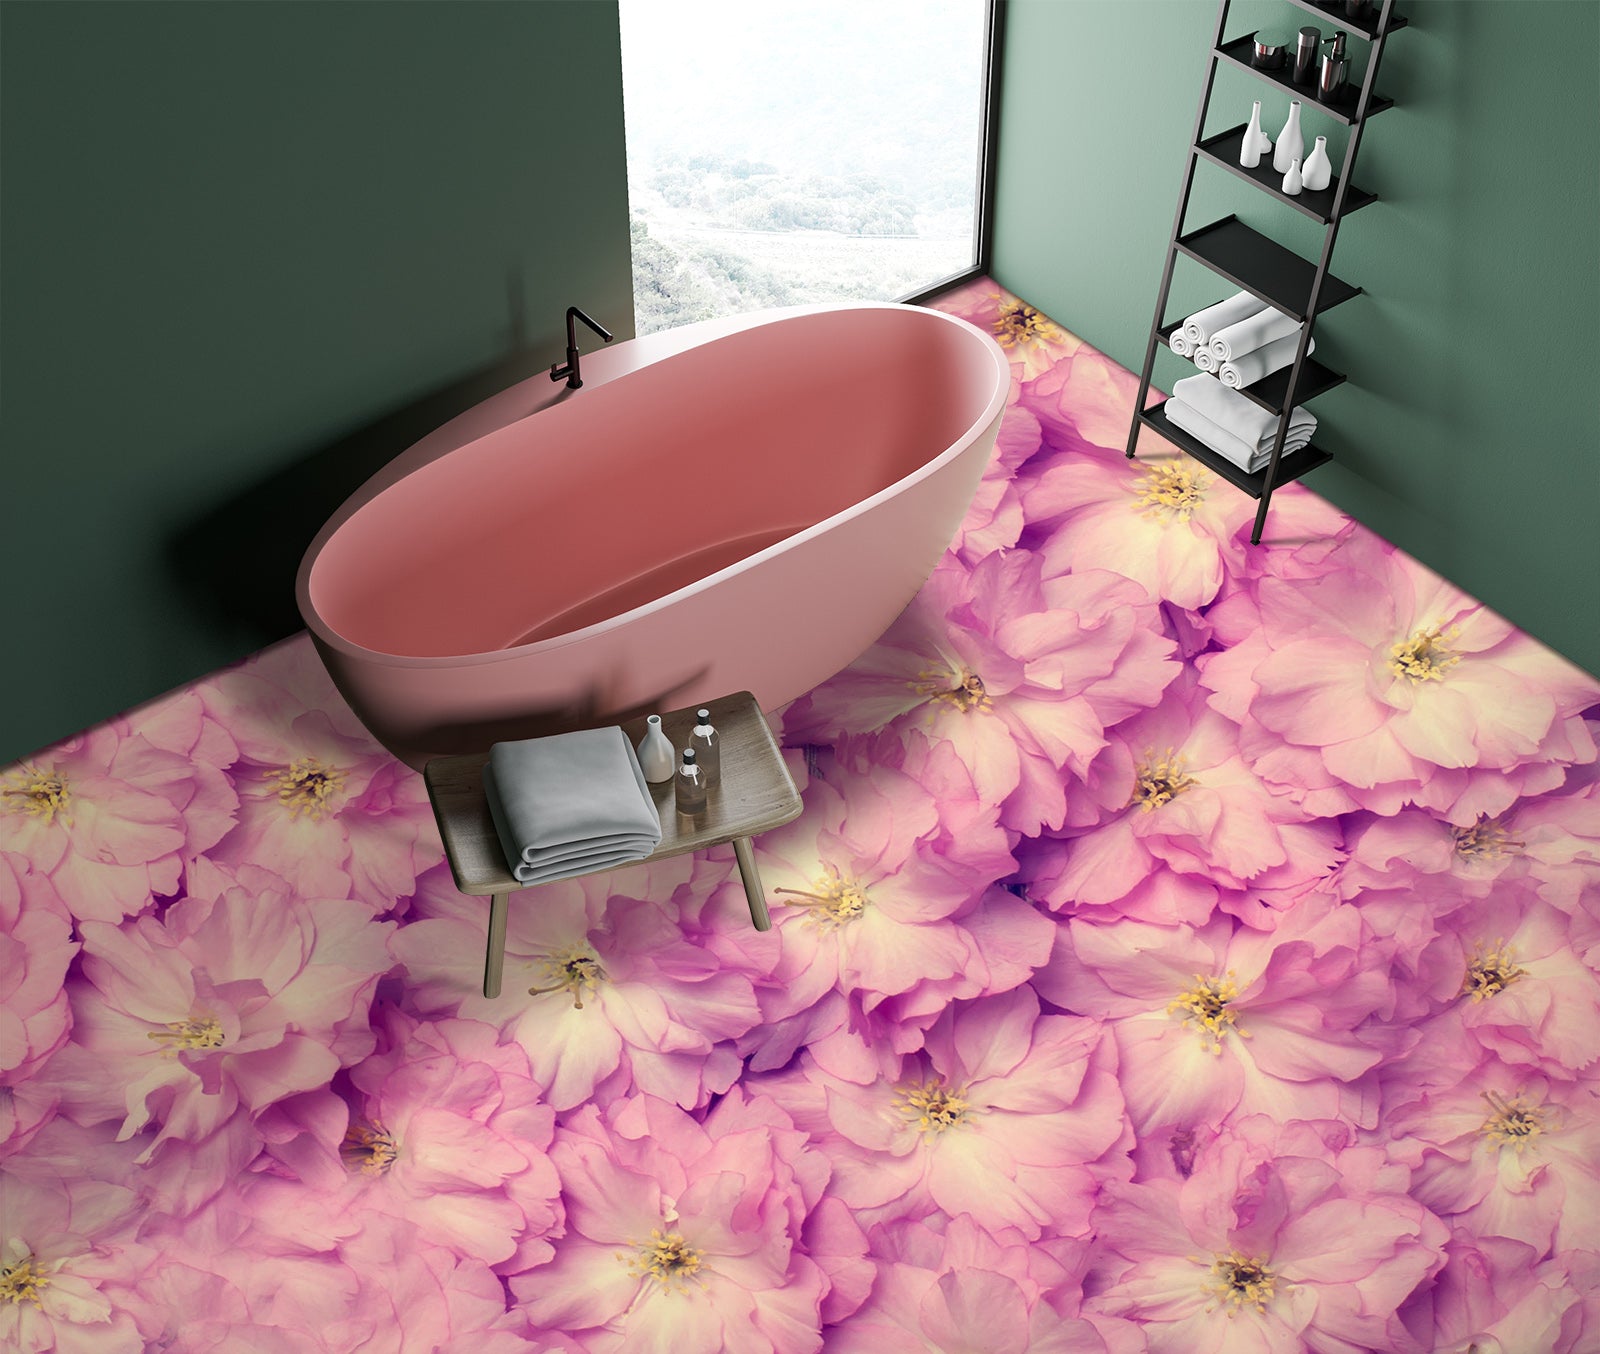 3D Pink Camellia 312 Floor Mural  Wallpaper Murals Rug & Mat Print Epoxy waterproof bath floor